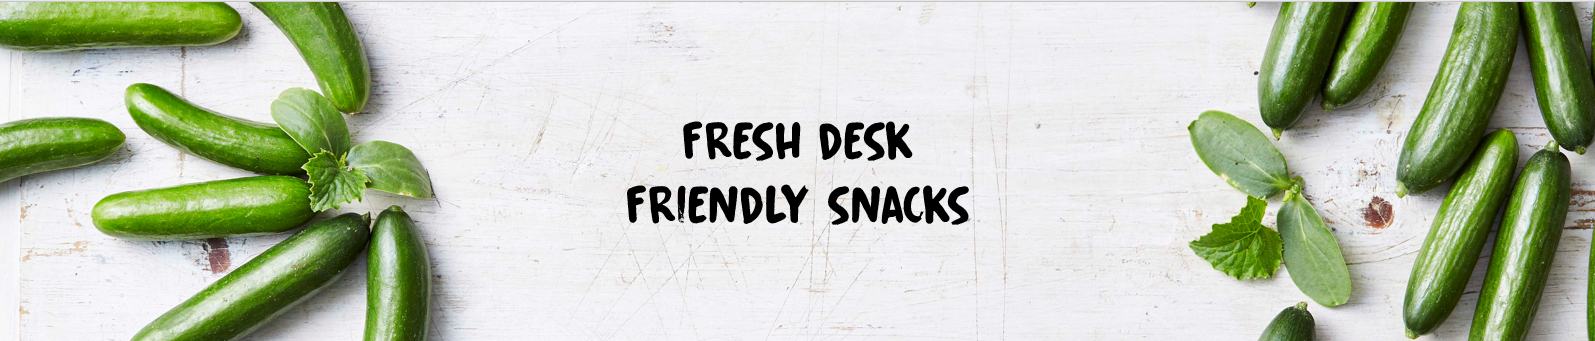 Fresh desk friendly snacks-1